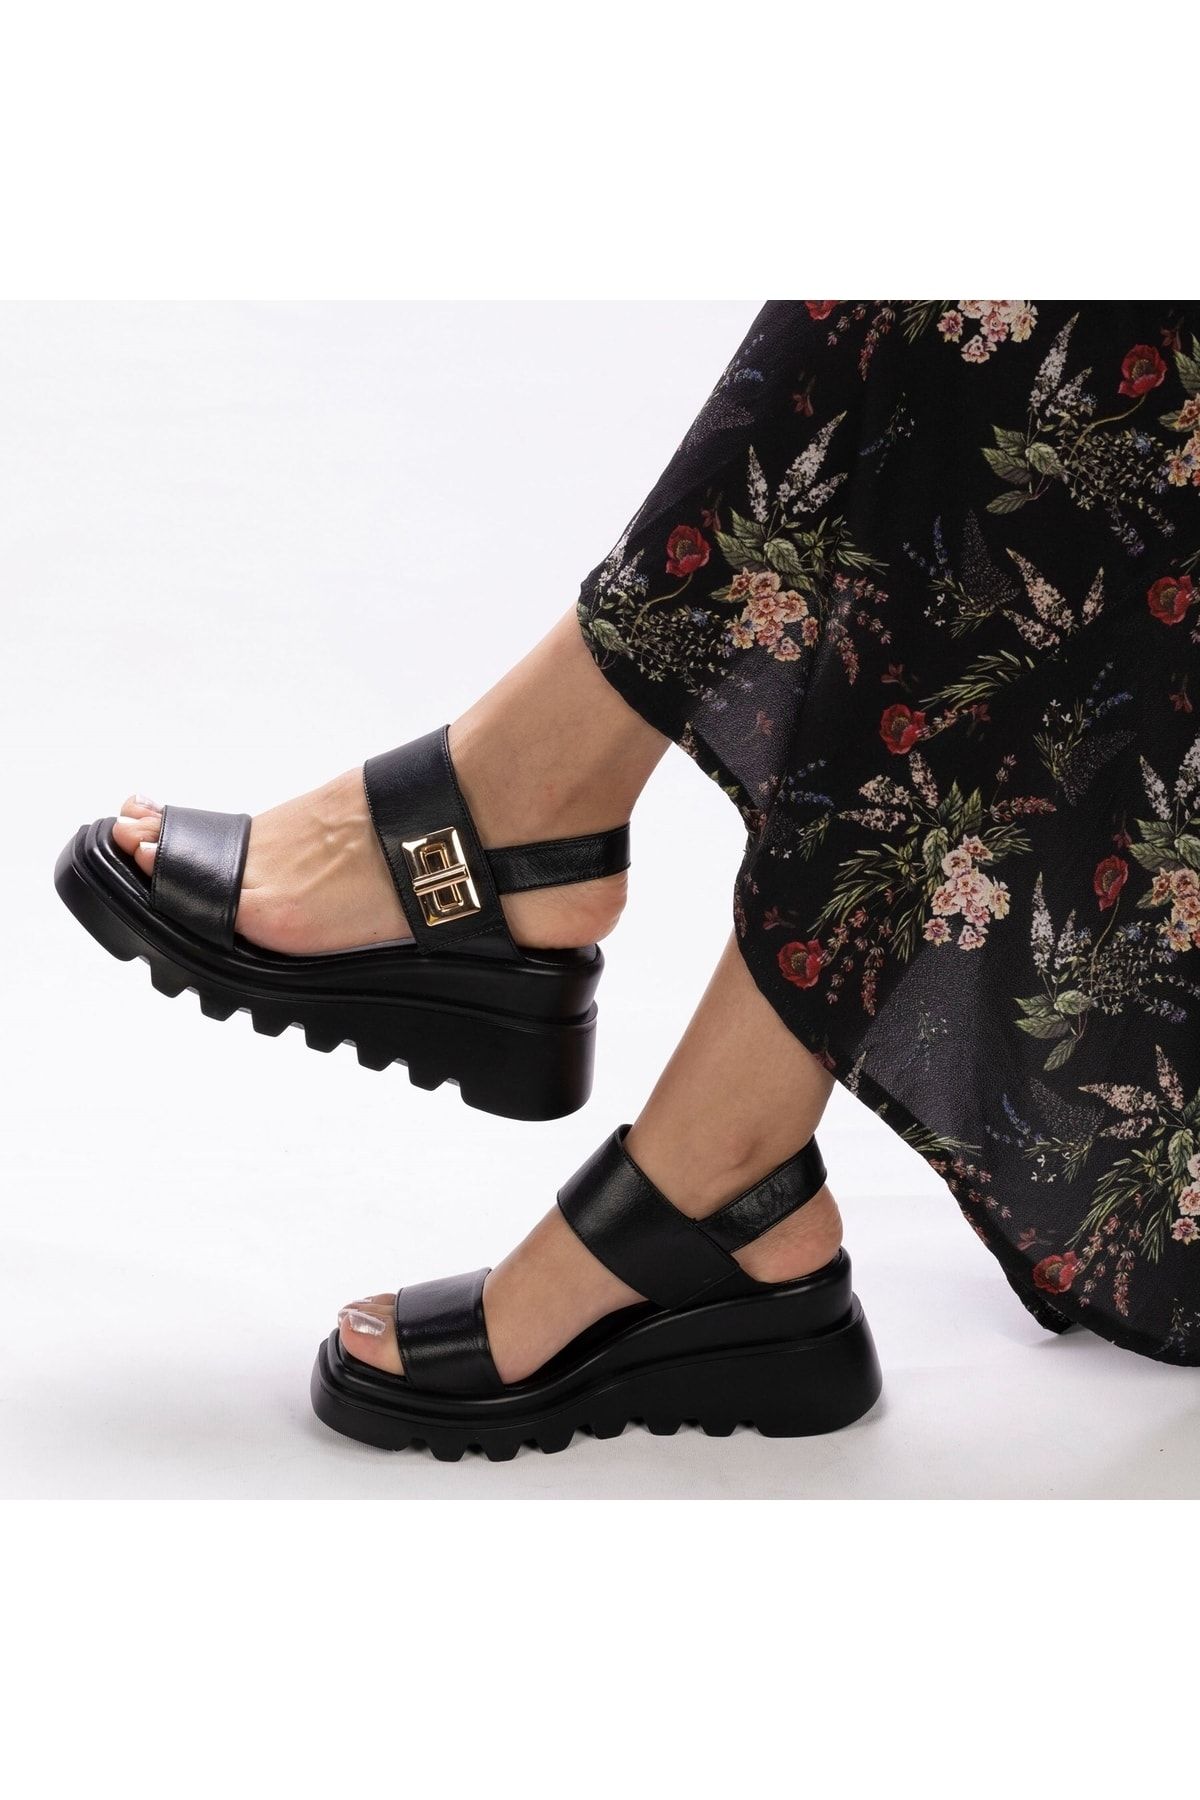 TwoEgoist Kadın Hakiki Deri Sandalet Siyah Kalın Tabanlı 7,5 Cm Dolgu Topuklu Spor Günlük Sandalet